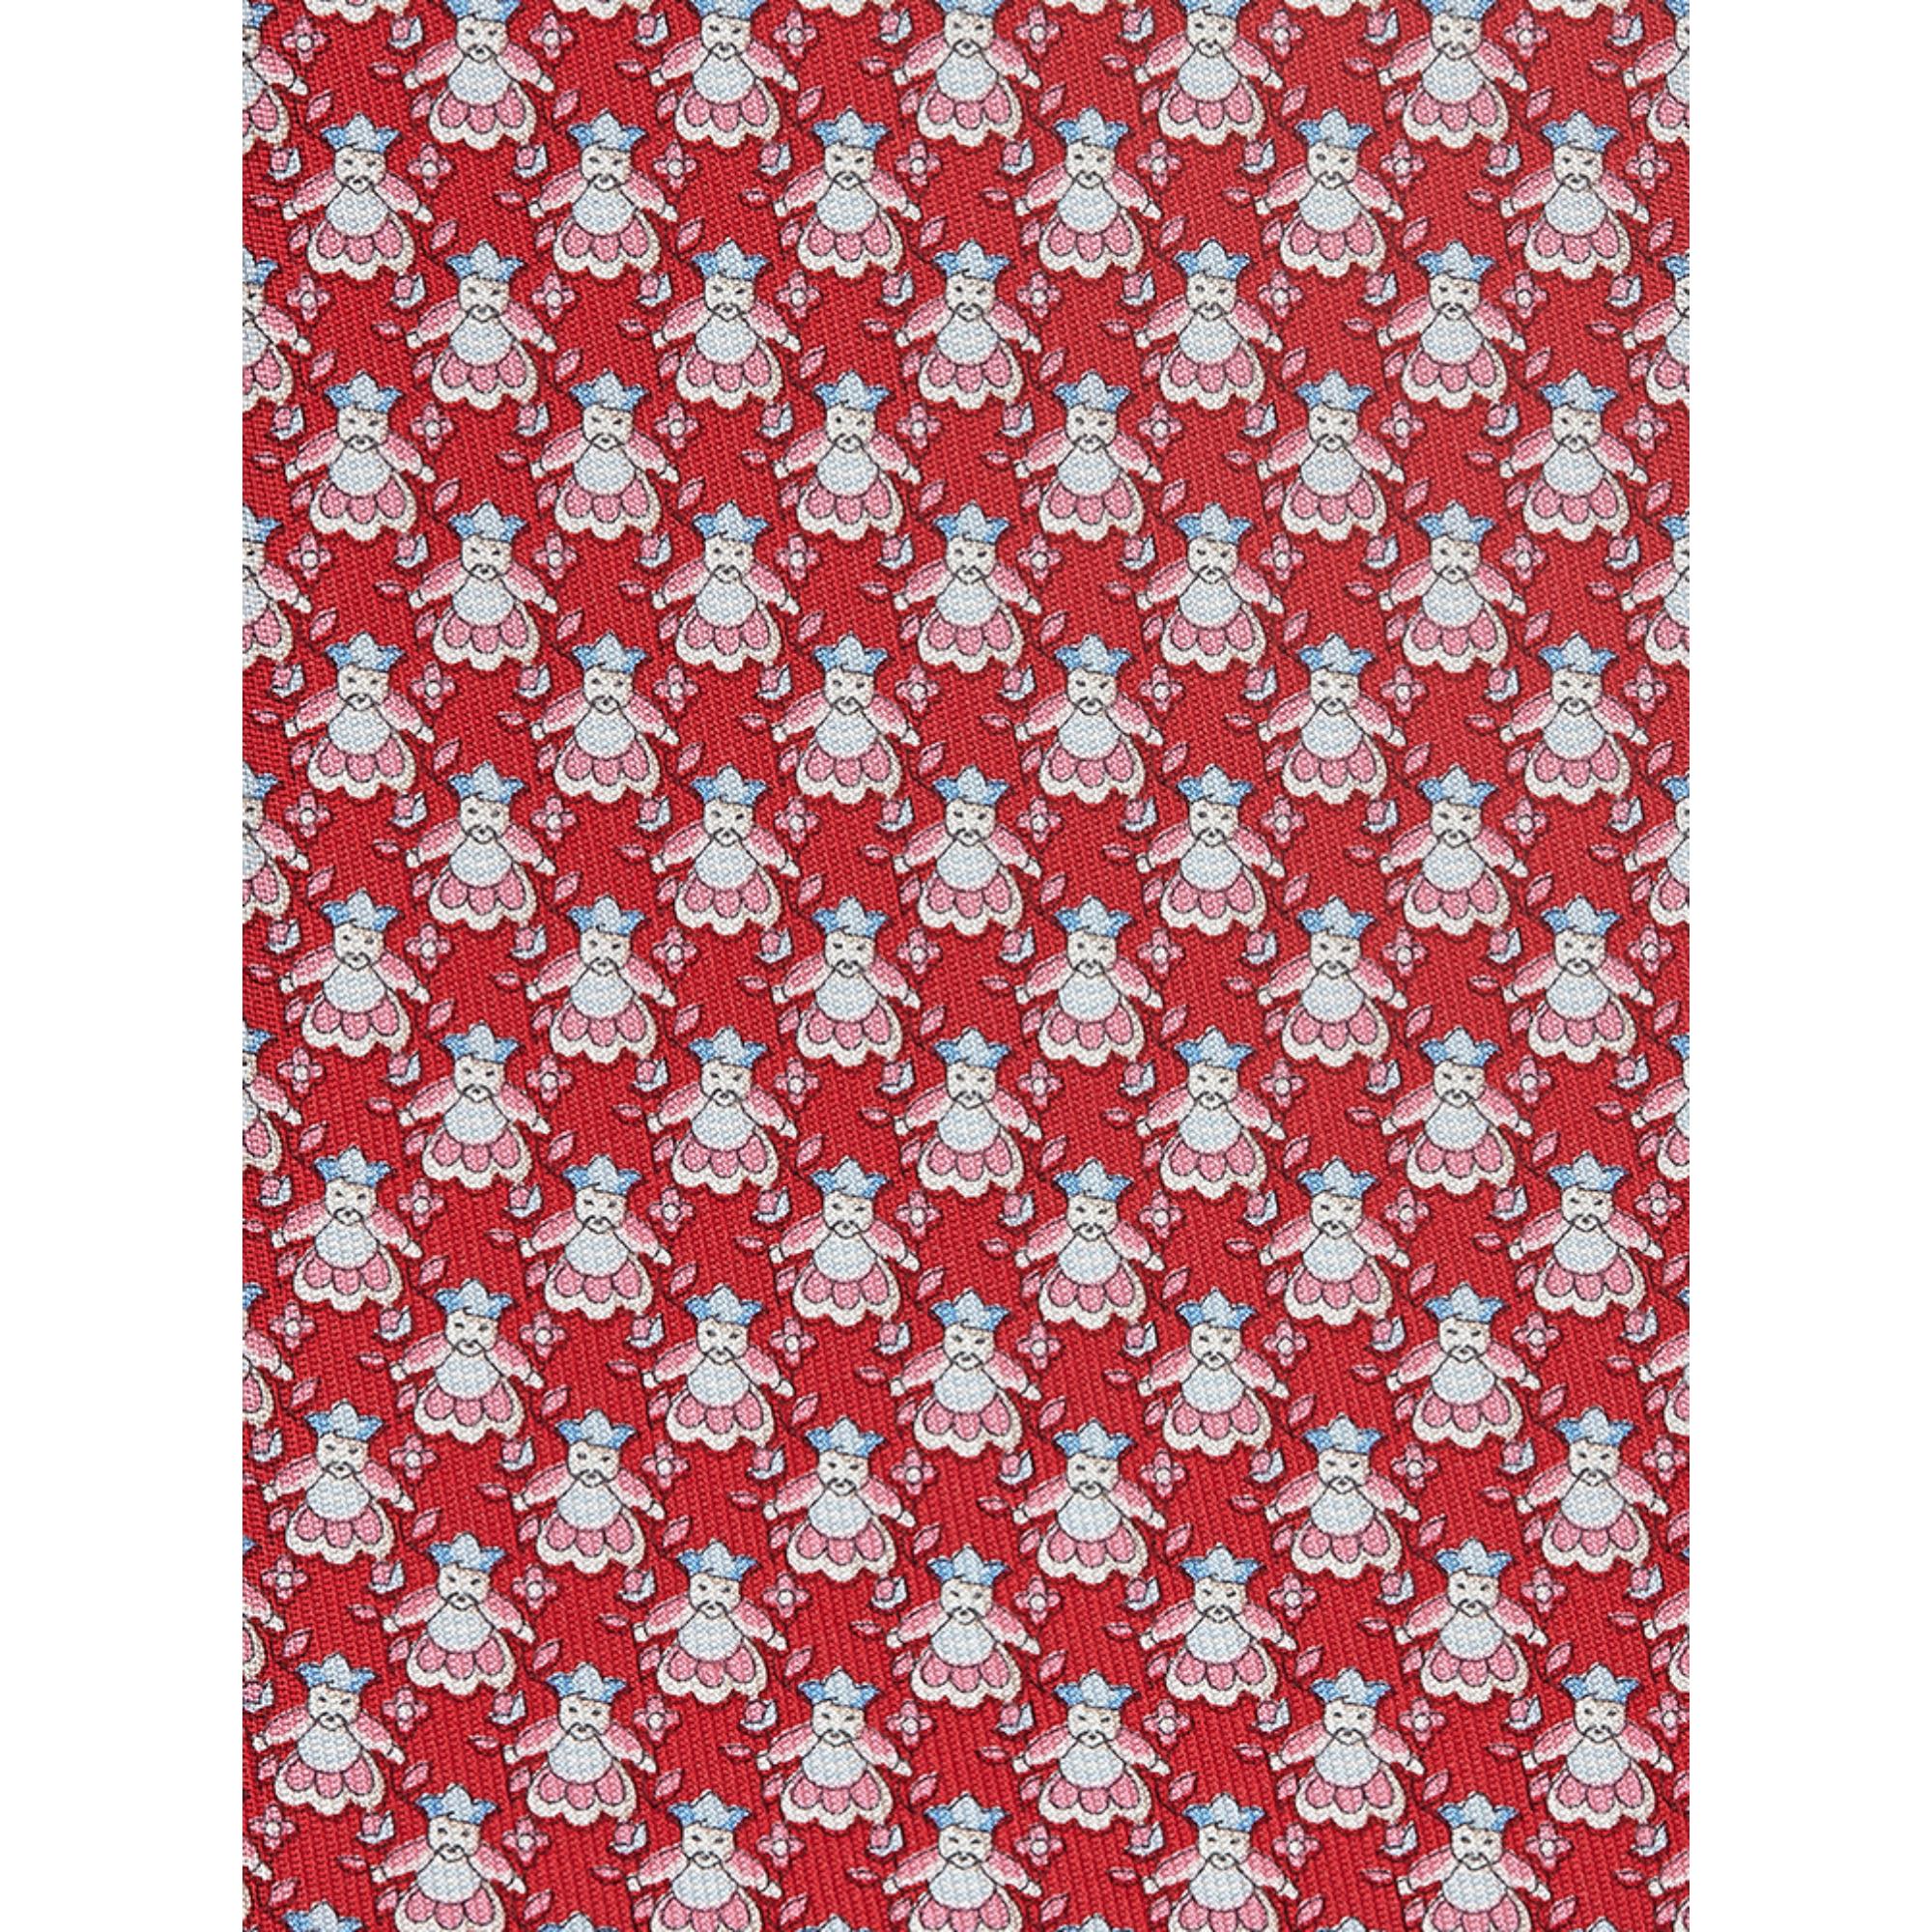 Beijing Print Silk Tie - Red